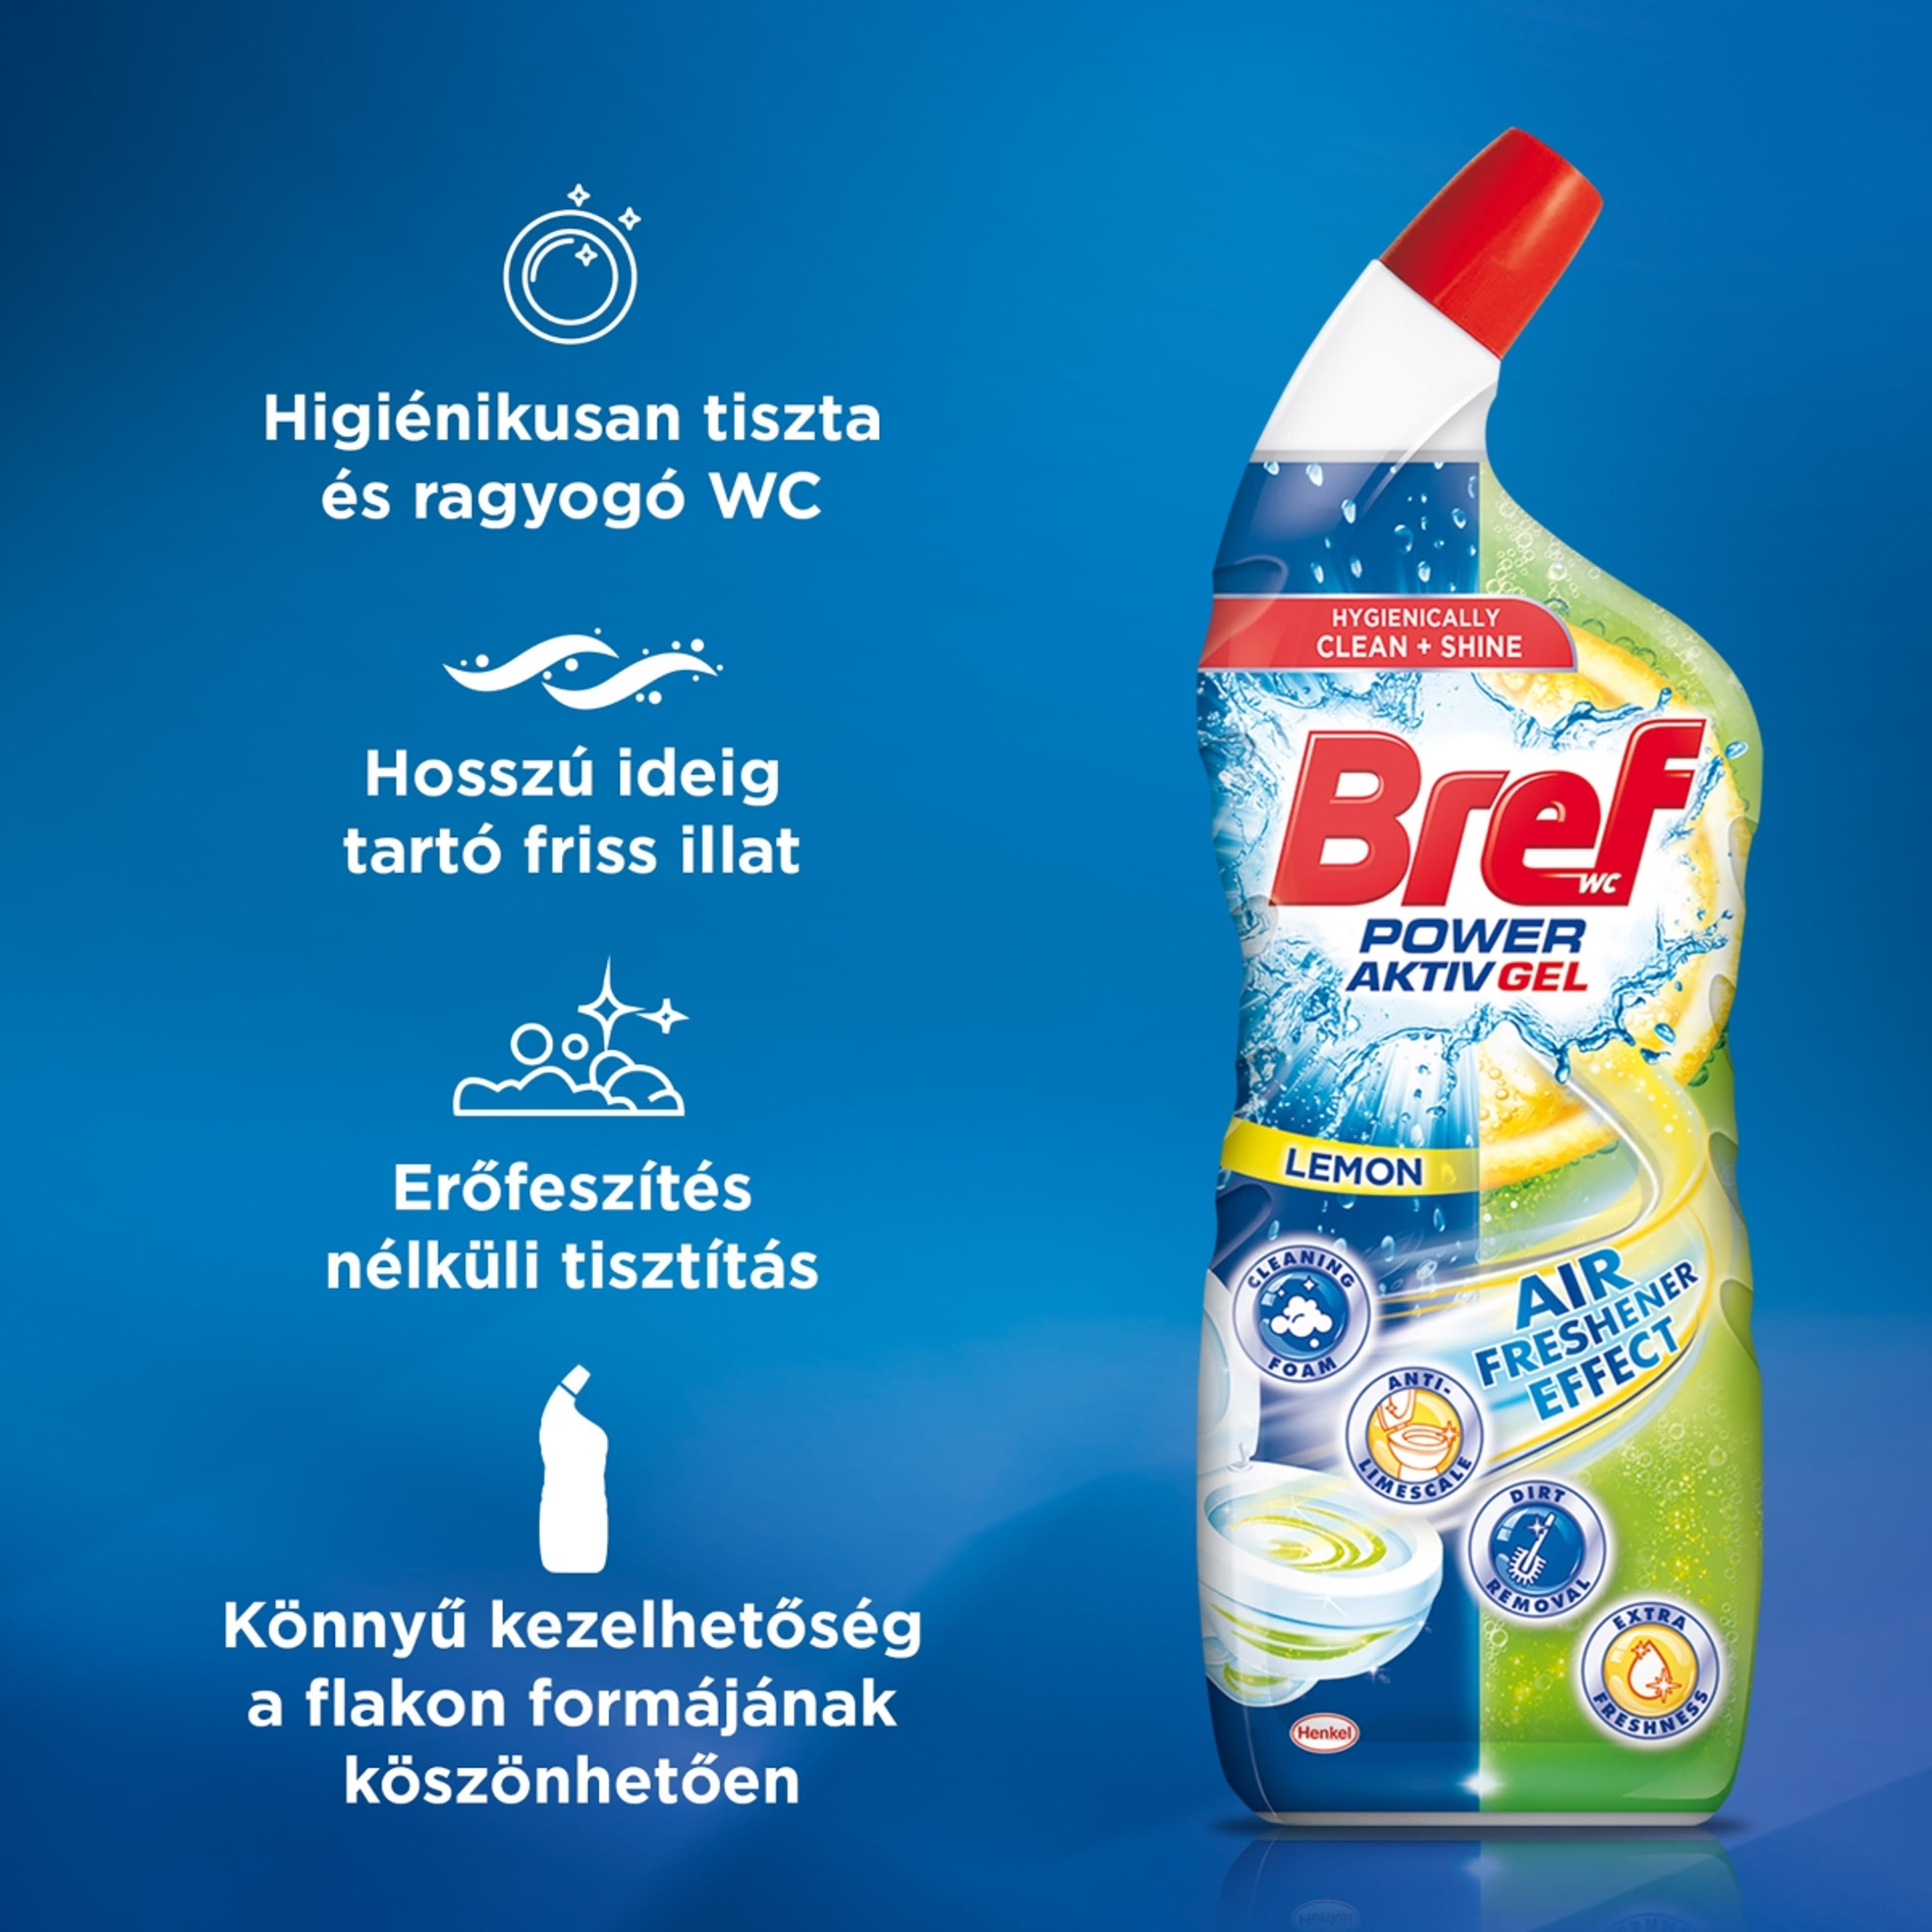 Bref Power Aktiv Gel Lemon WC tisztító - 700 ml-2